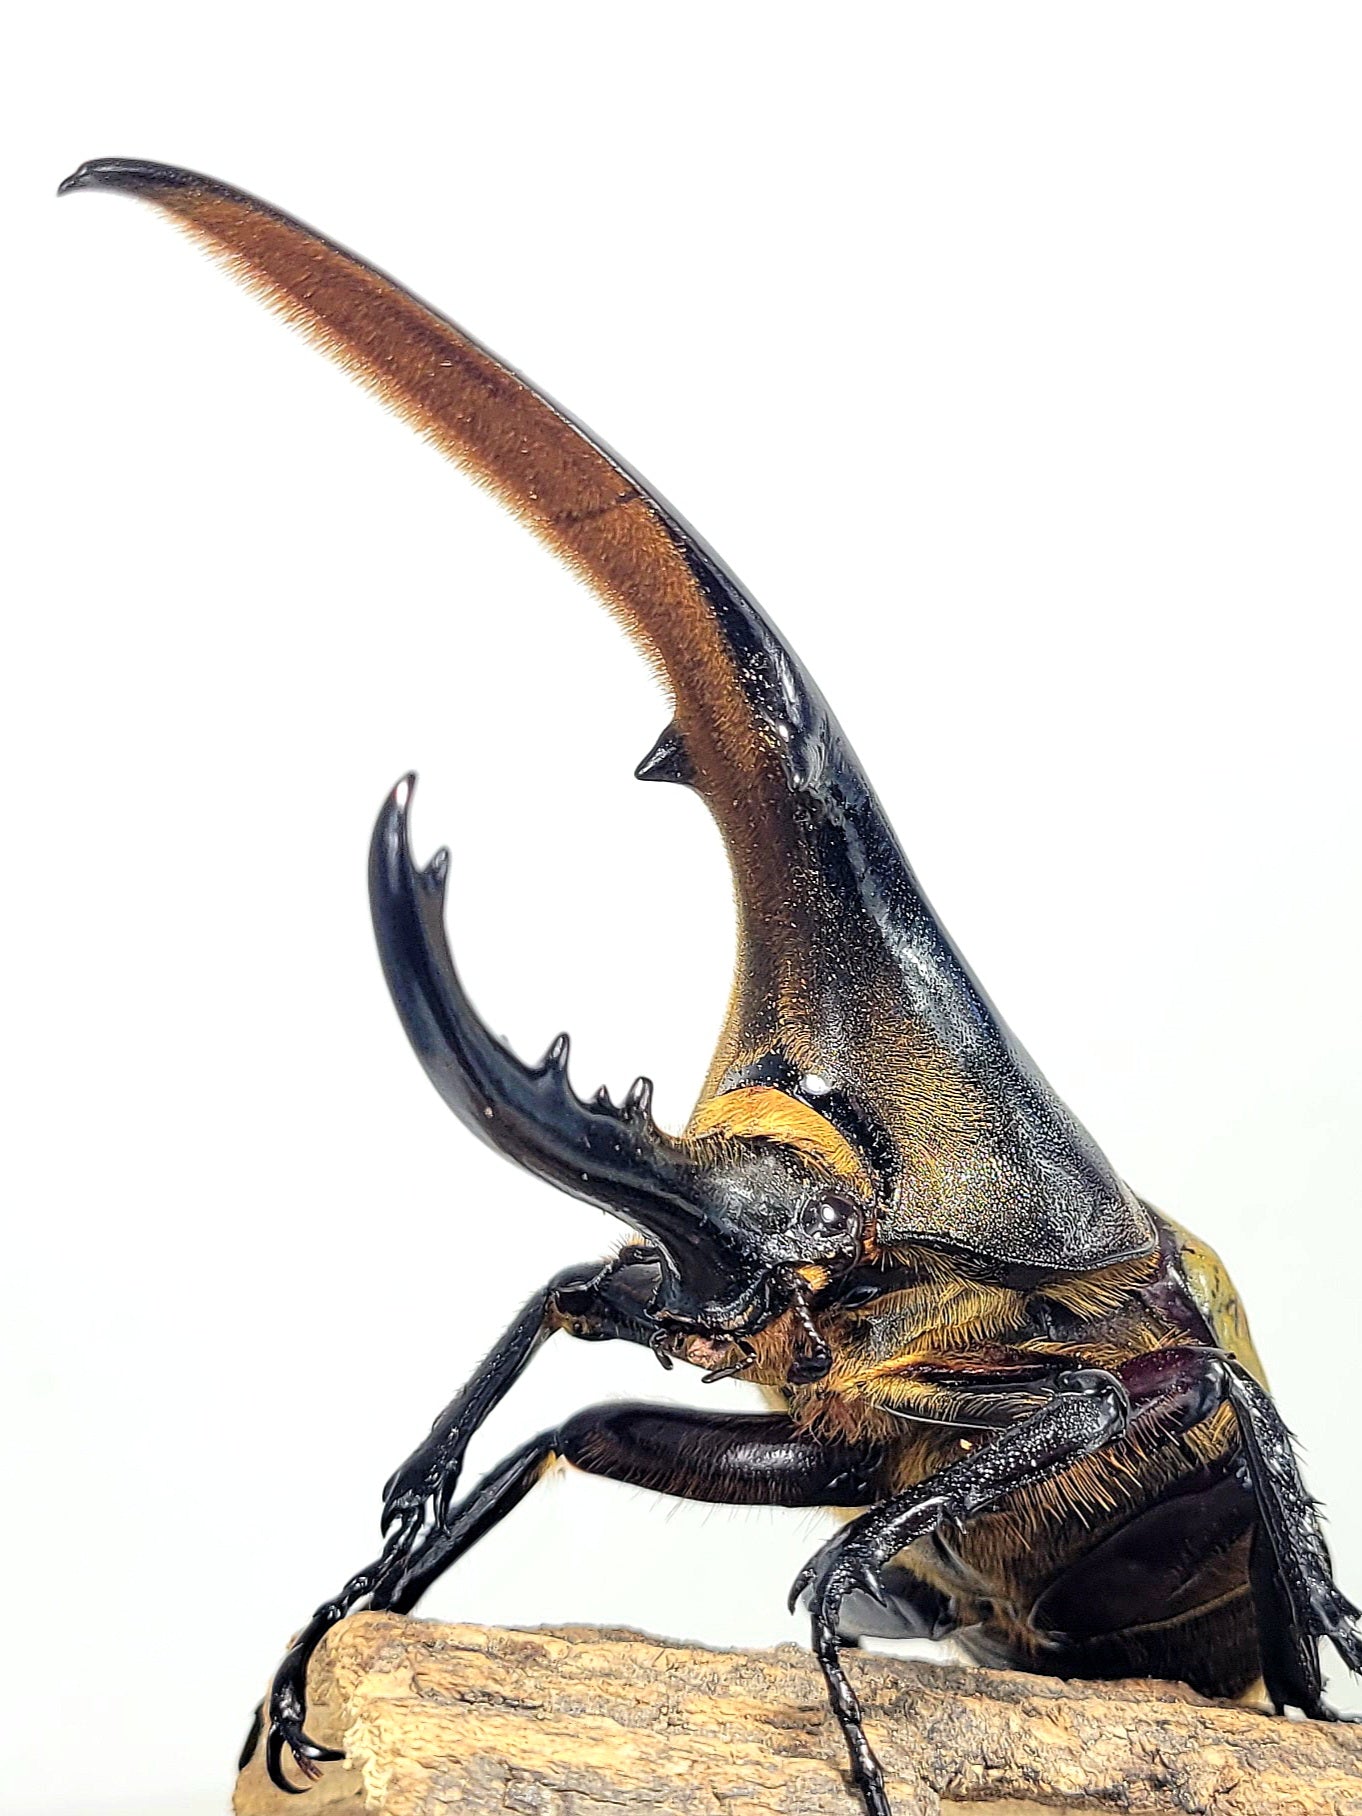 Hercules Beetle  (Dynastes hercules hercules)